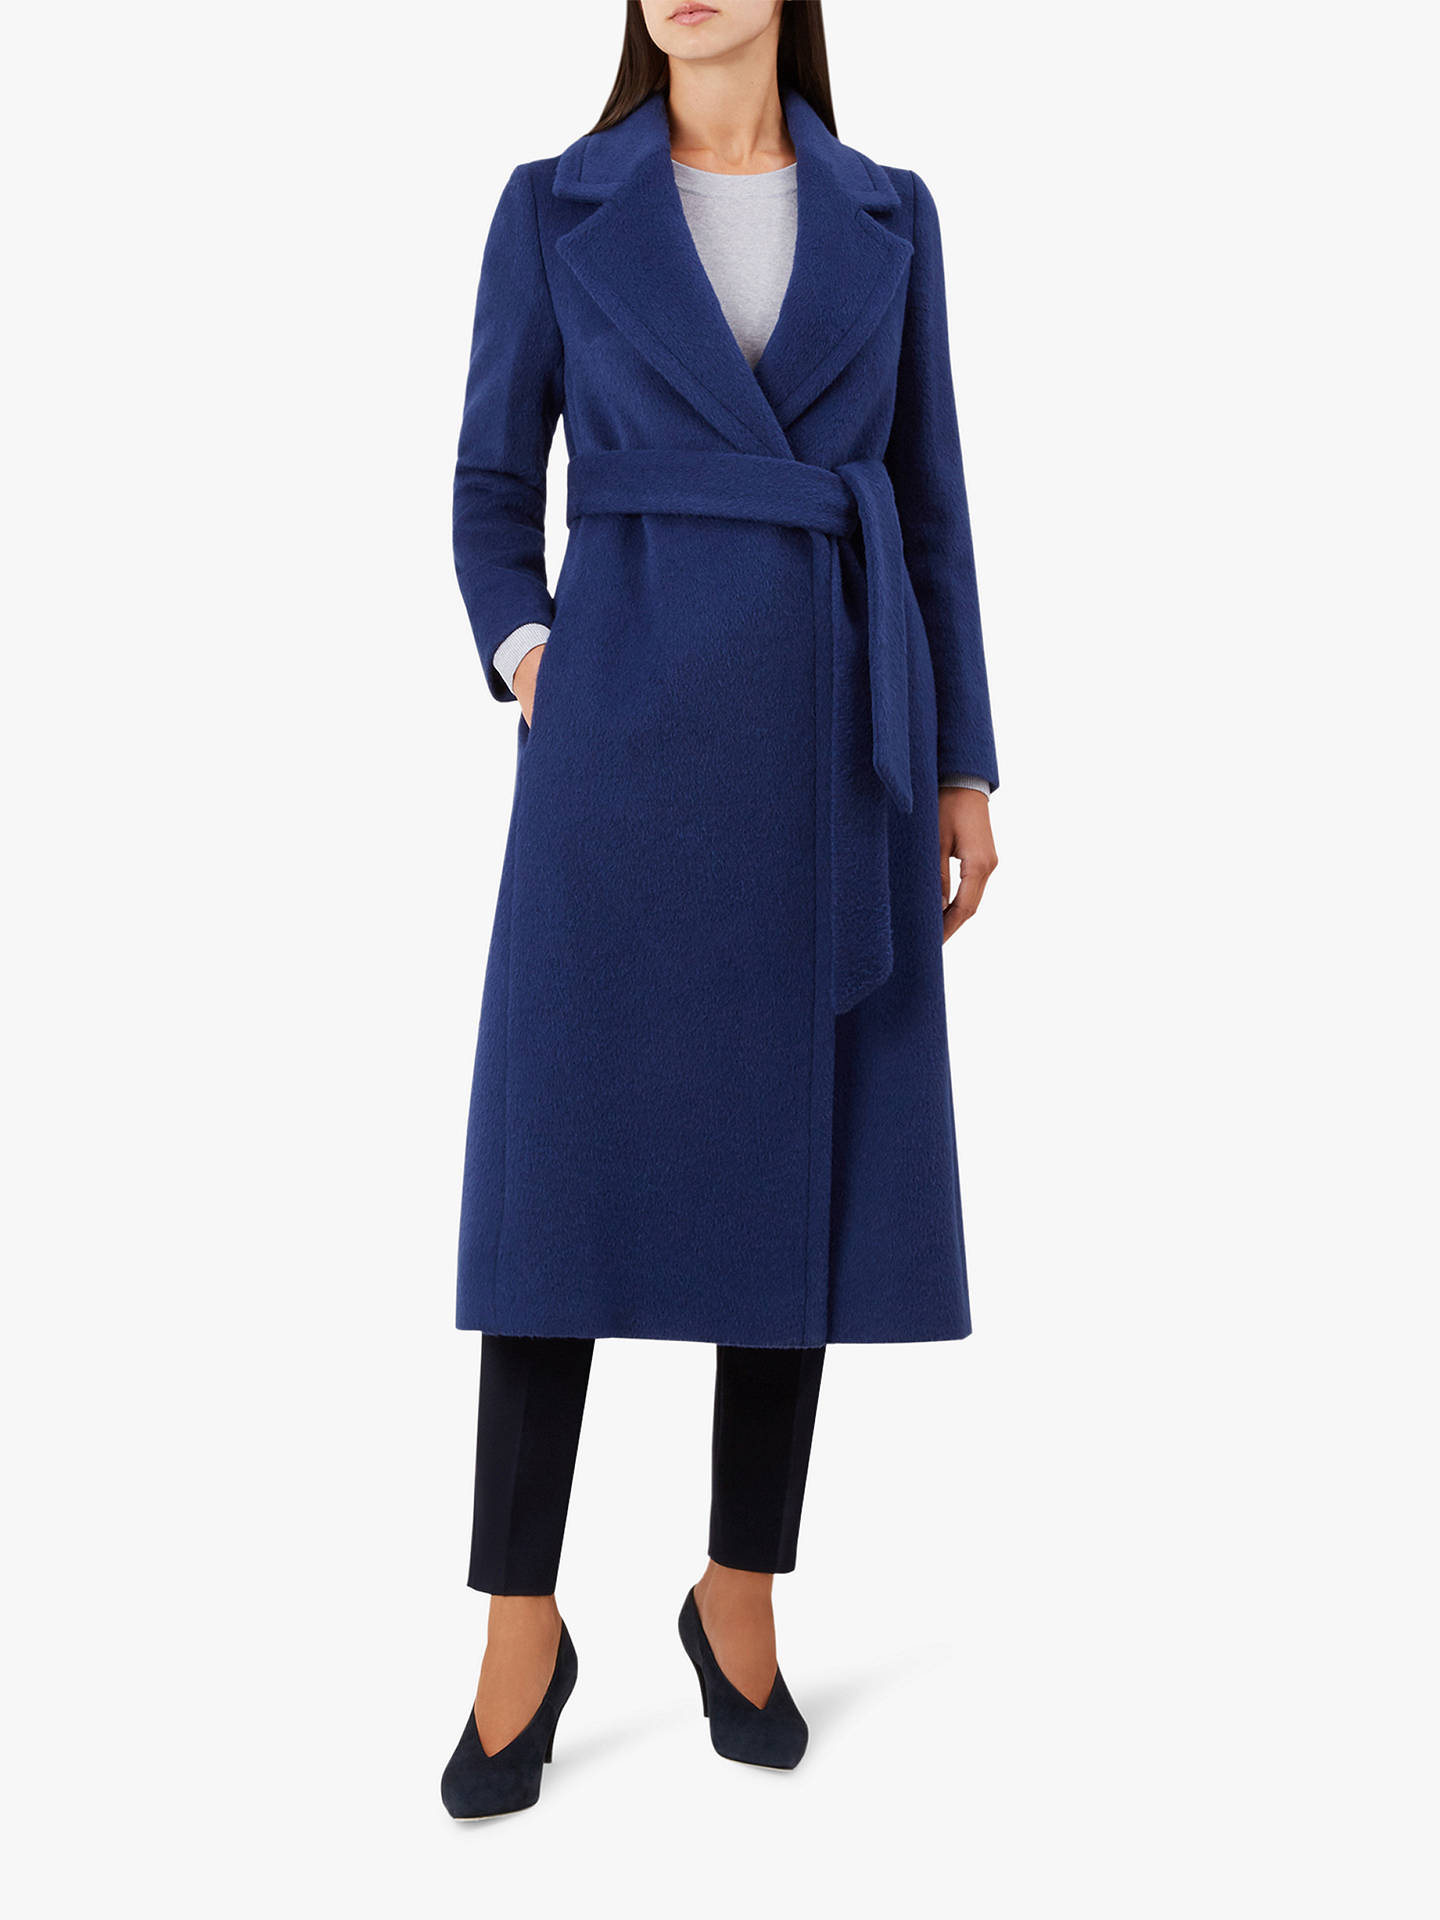 royal blue dress coat 2f0d5f